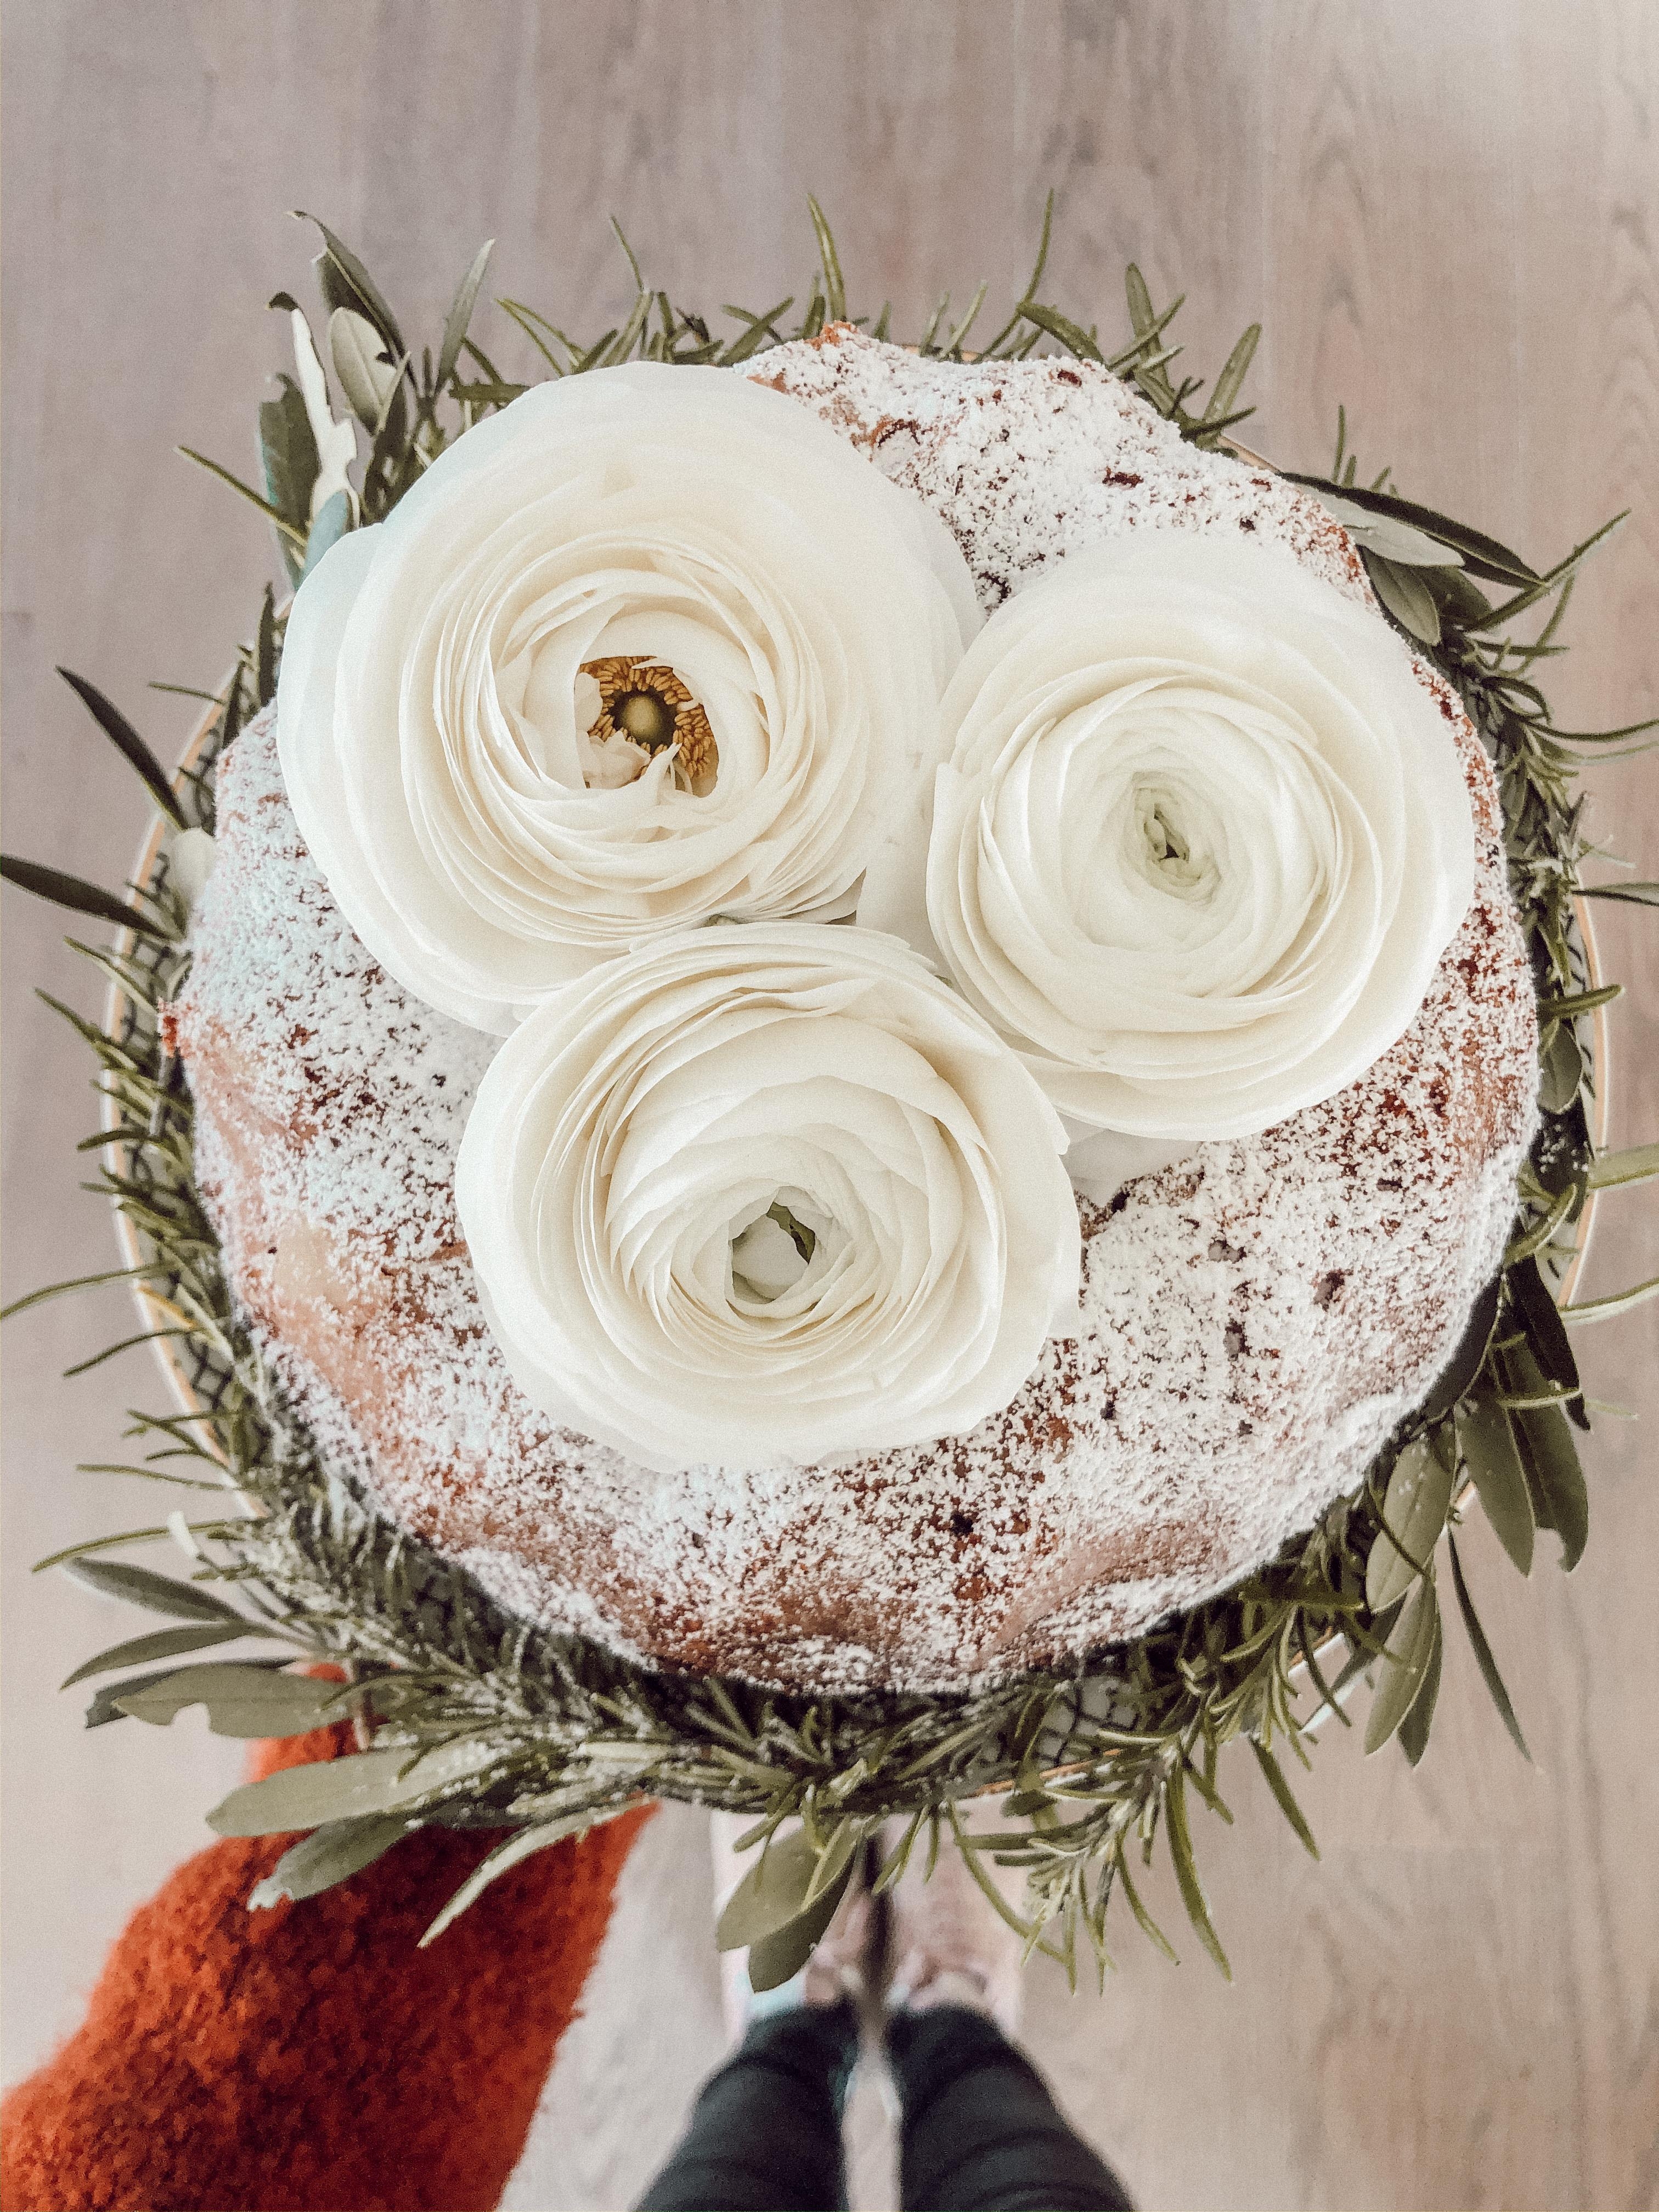 Kuchenliebe 🧡
Marmorkuchen mit #Ranunkeltopping #freshflowerfriday #kuchenfürdieseele